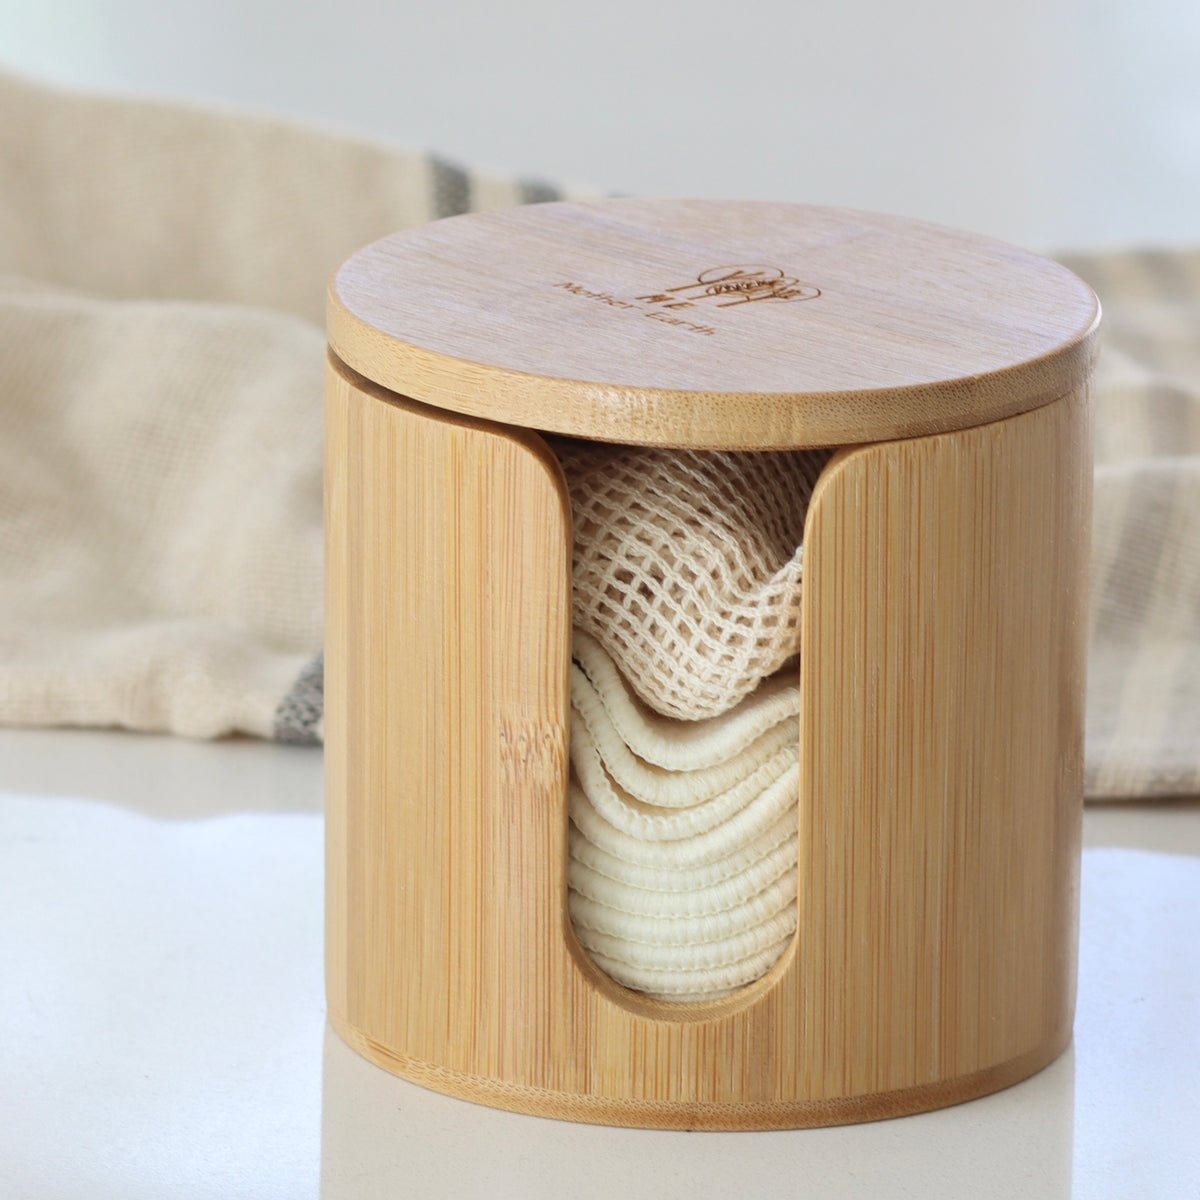 Bamboo Storage Box + Washable Hemp Cotton Rounds - Holistic Habitat 